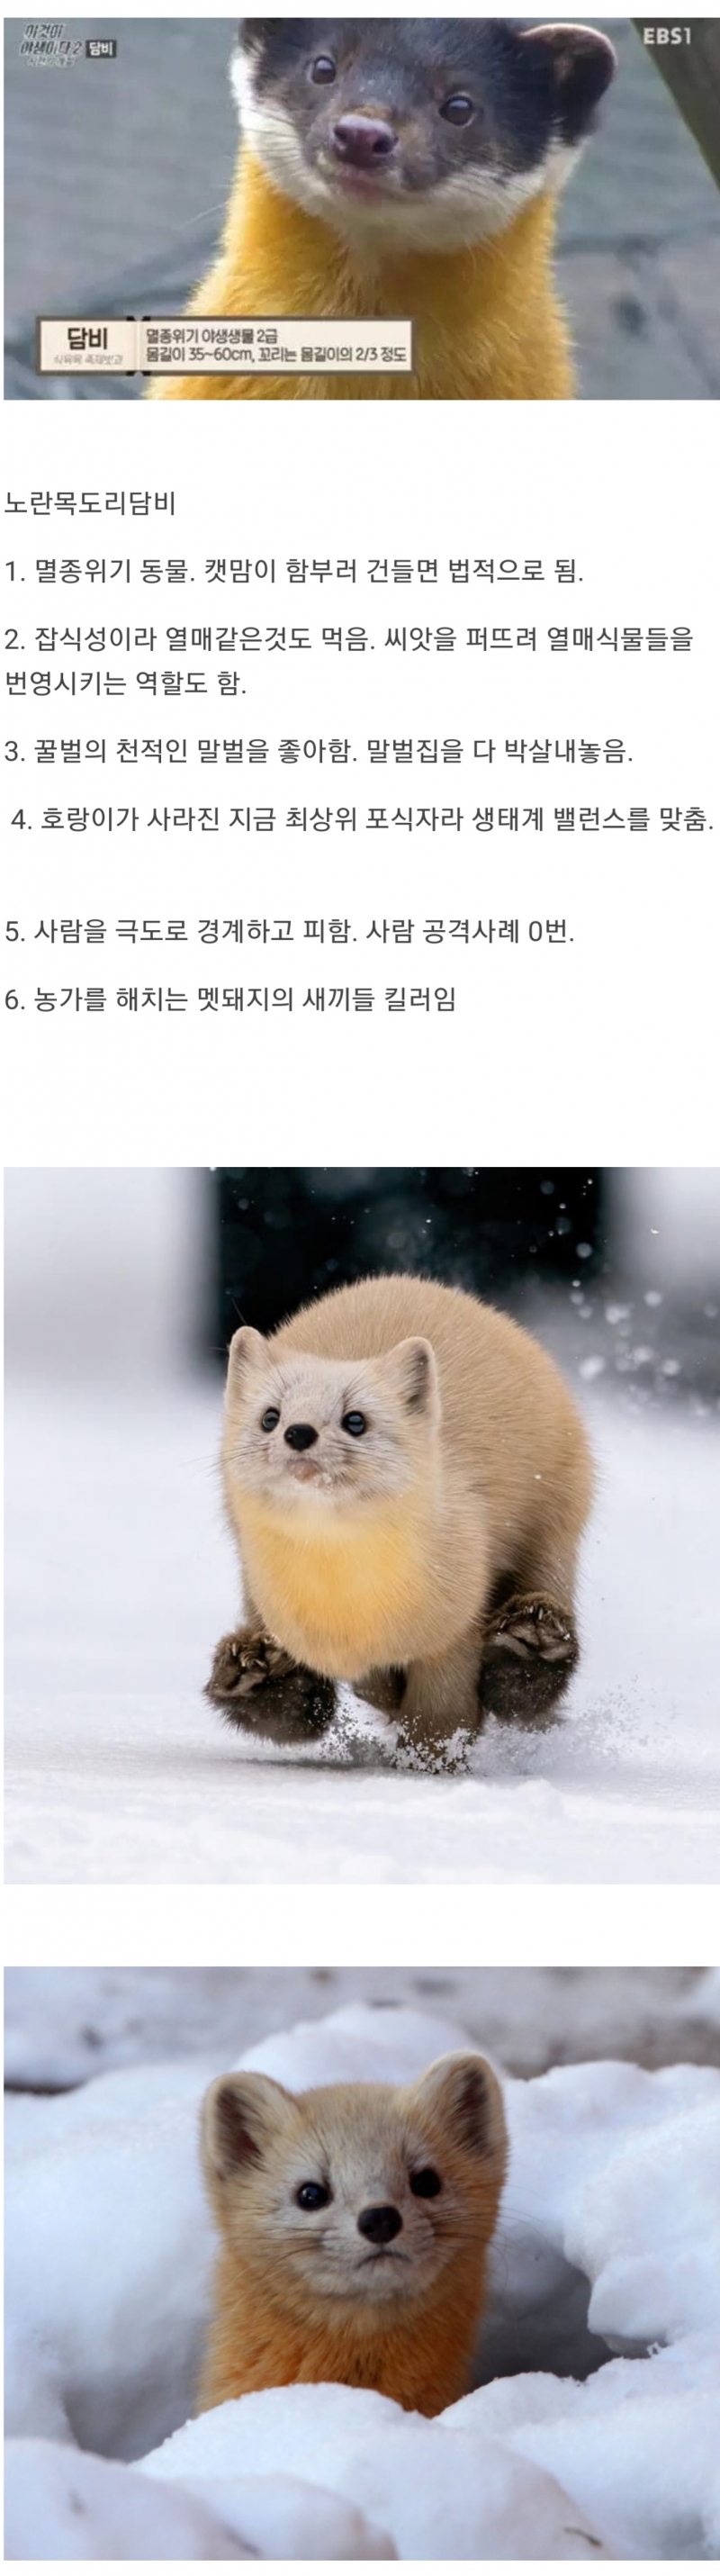 한국 생태계 최상급인 동물